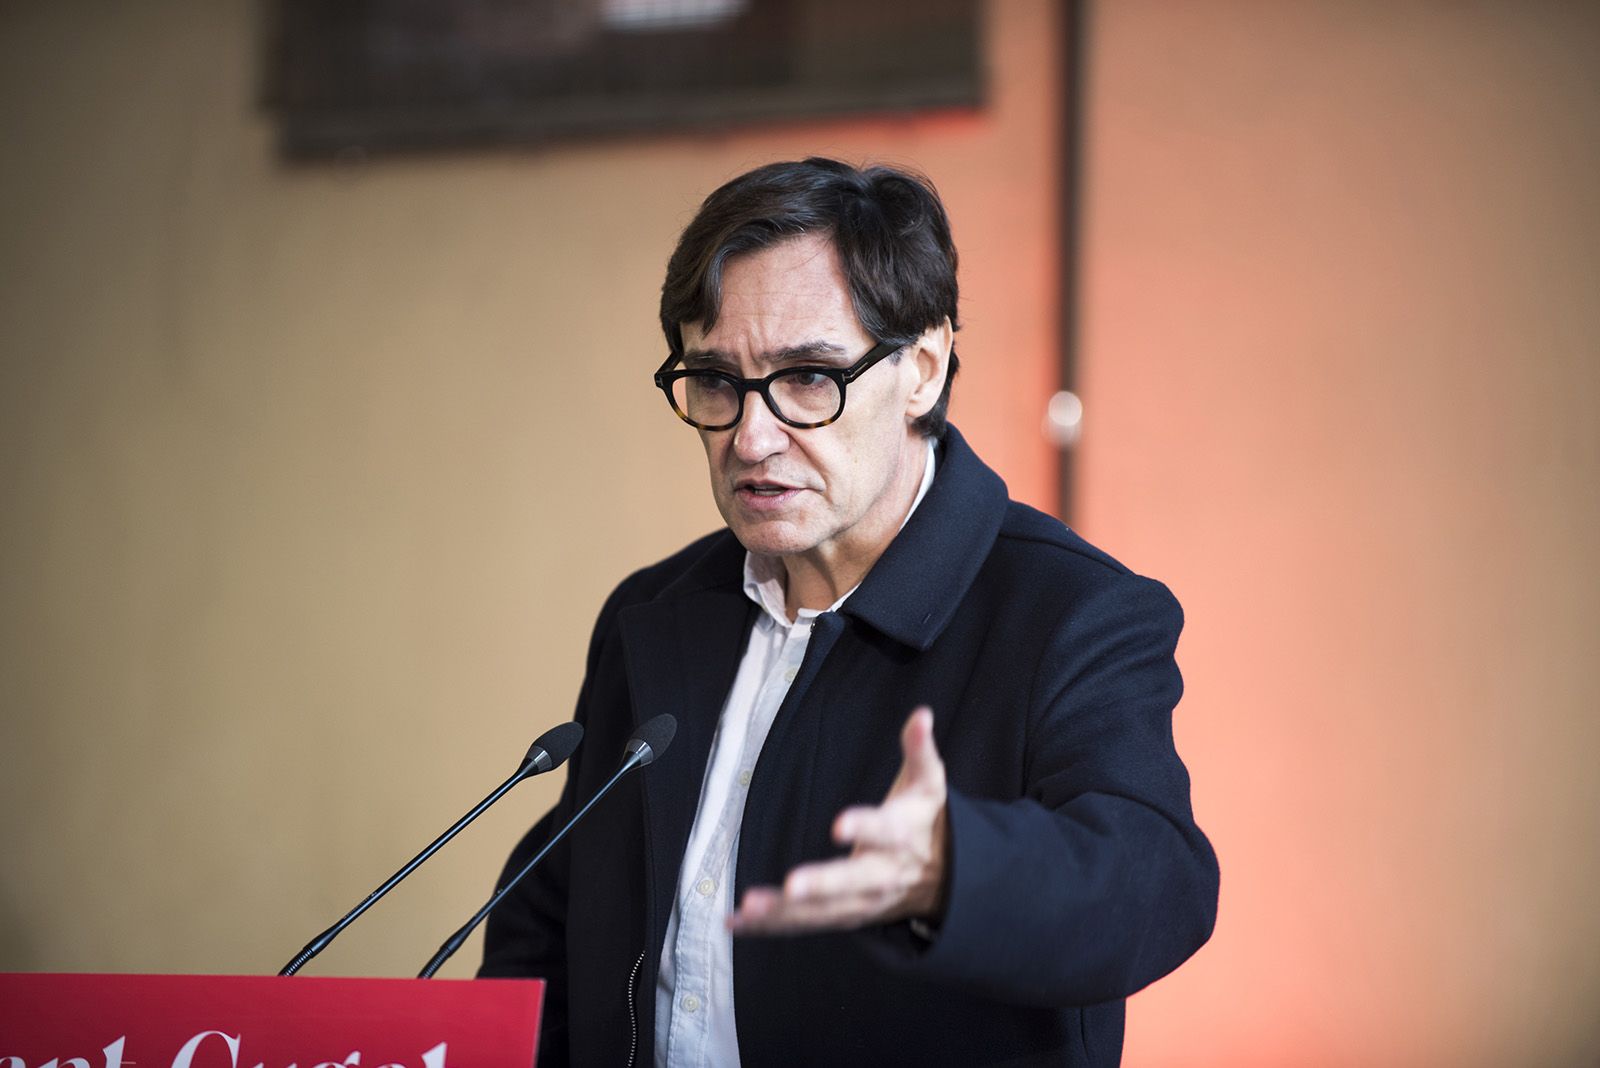 Presentació de Pere Soler com a candidat del PSC a l'alcaldia de Sant Cugat. FOTO: Bernat Millet.